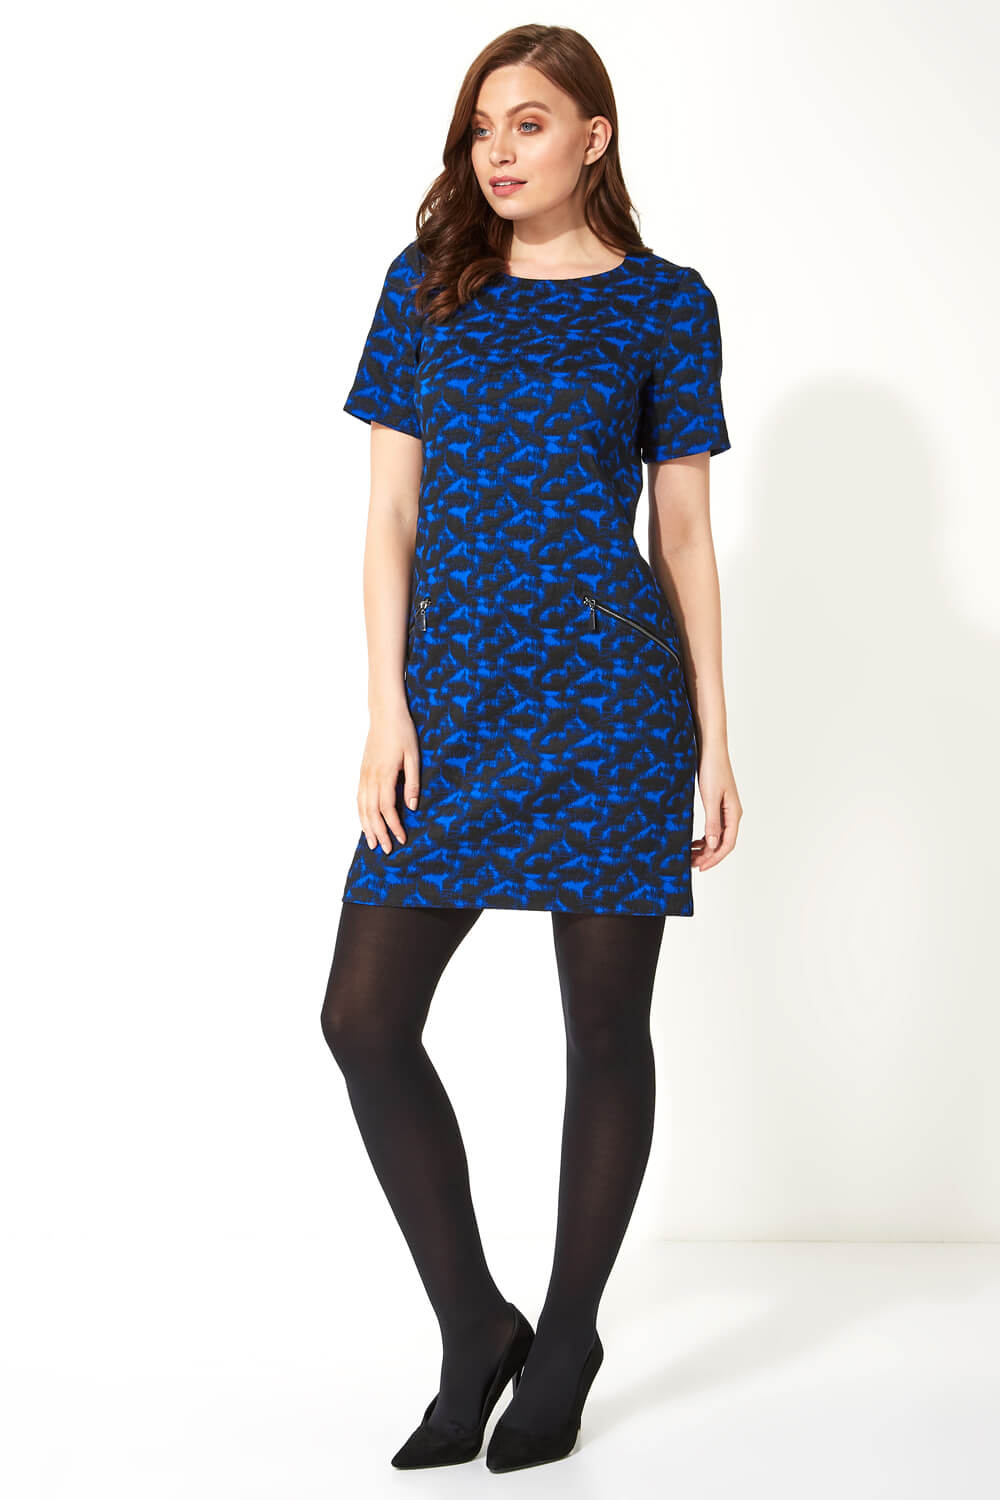 Royal Blue Abstract Zip Pocket Shift Dress, Image 2 of 5